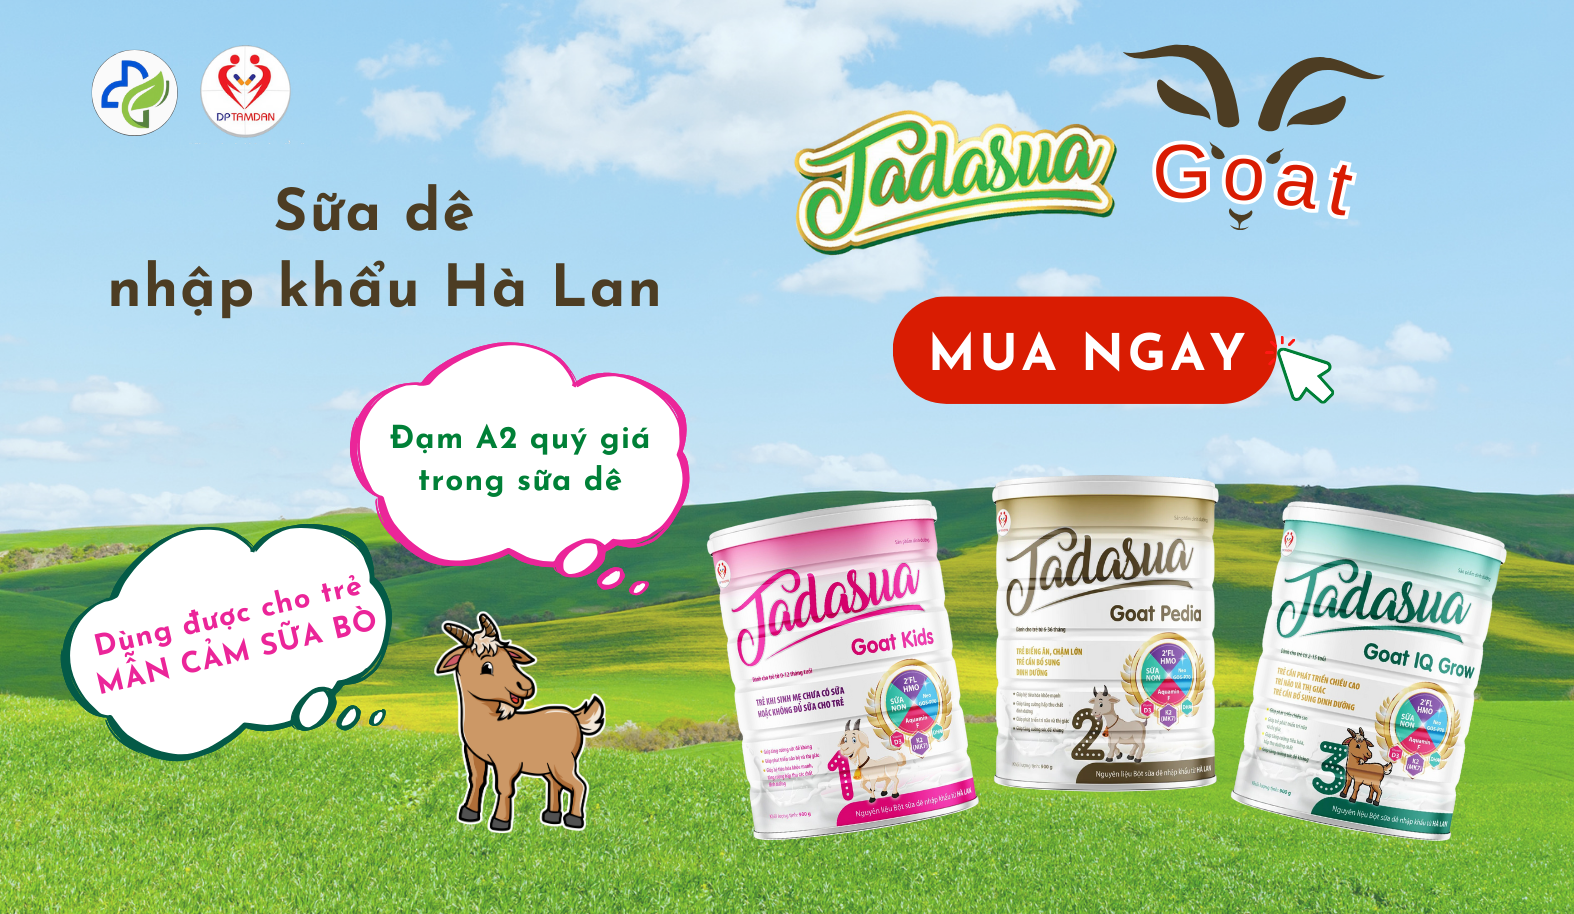 Sữa dê Tadasua Goat - Dinh dưỡng trọn vẹn cho trẻ